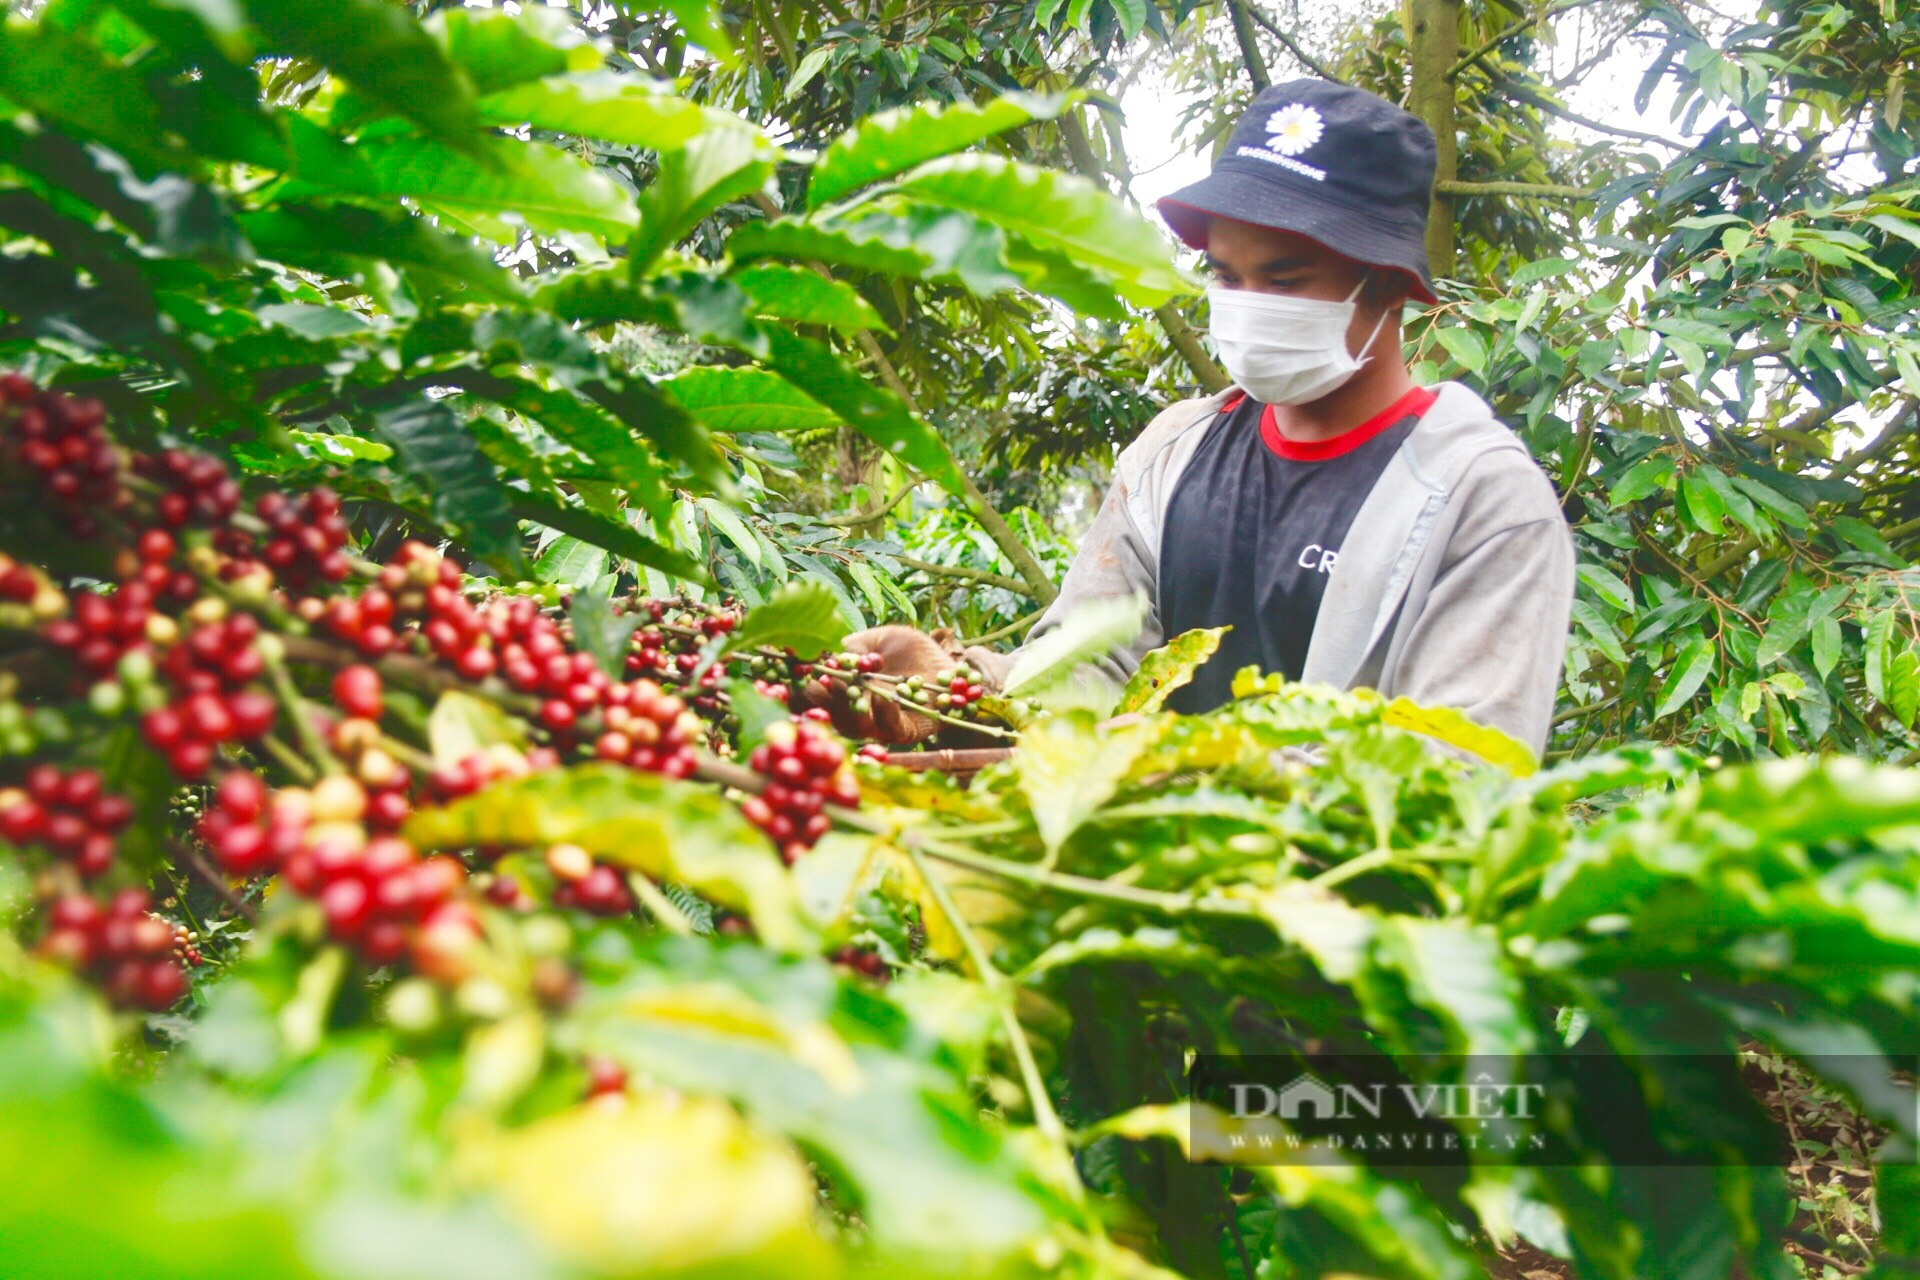 Đề xuất nâng cao mức vốn vay tái canh cà phê lên 350 triệu đồng/ha, mở rộng đề án ra 11 tỉnh - Ảnh 1.